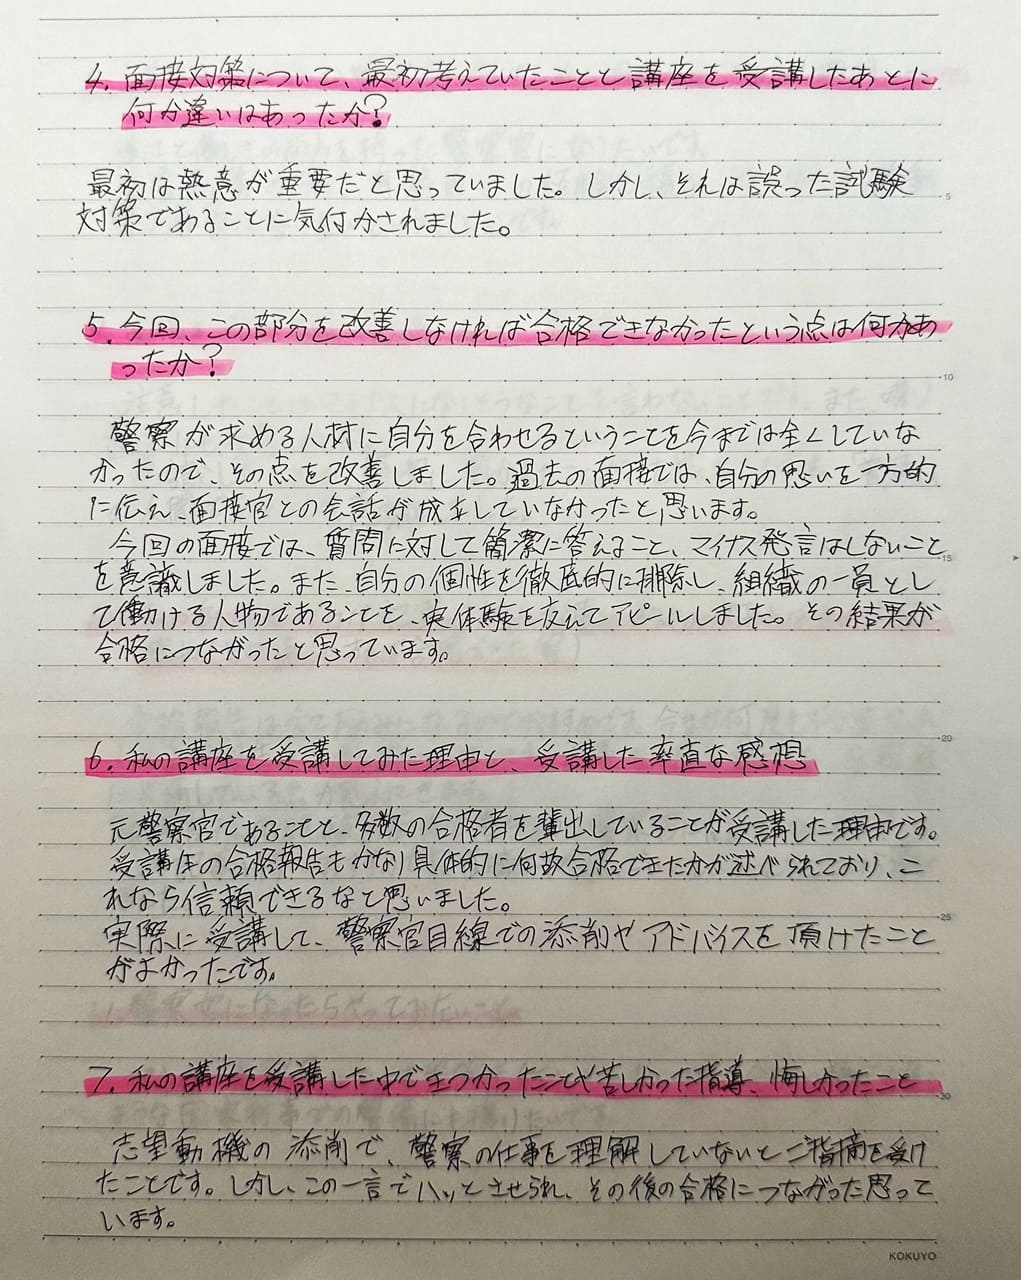 警視庁の採用試験を何度も不合格になった受験生が最終的に大阪府警と北海道警に合格した理由を直筆の手紙に記載した画像です。面接対策についても詳しく記載しています。